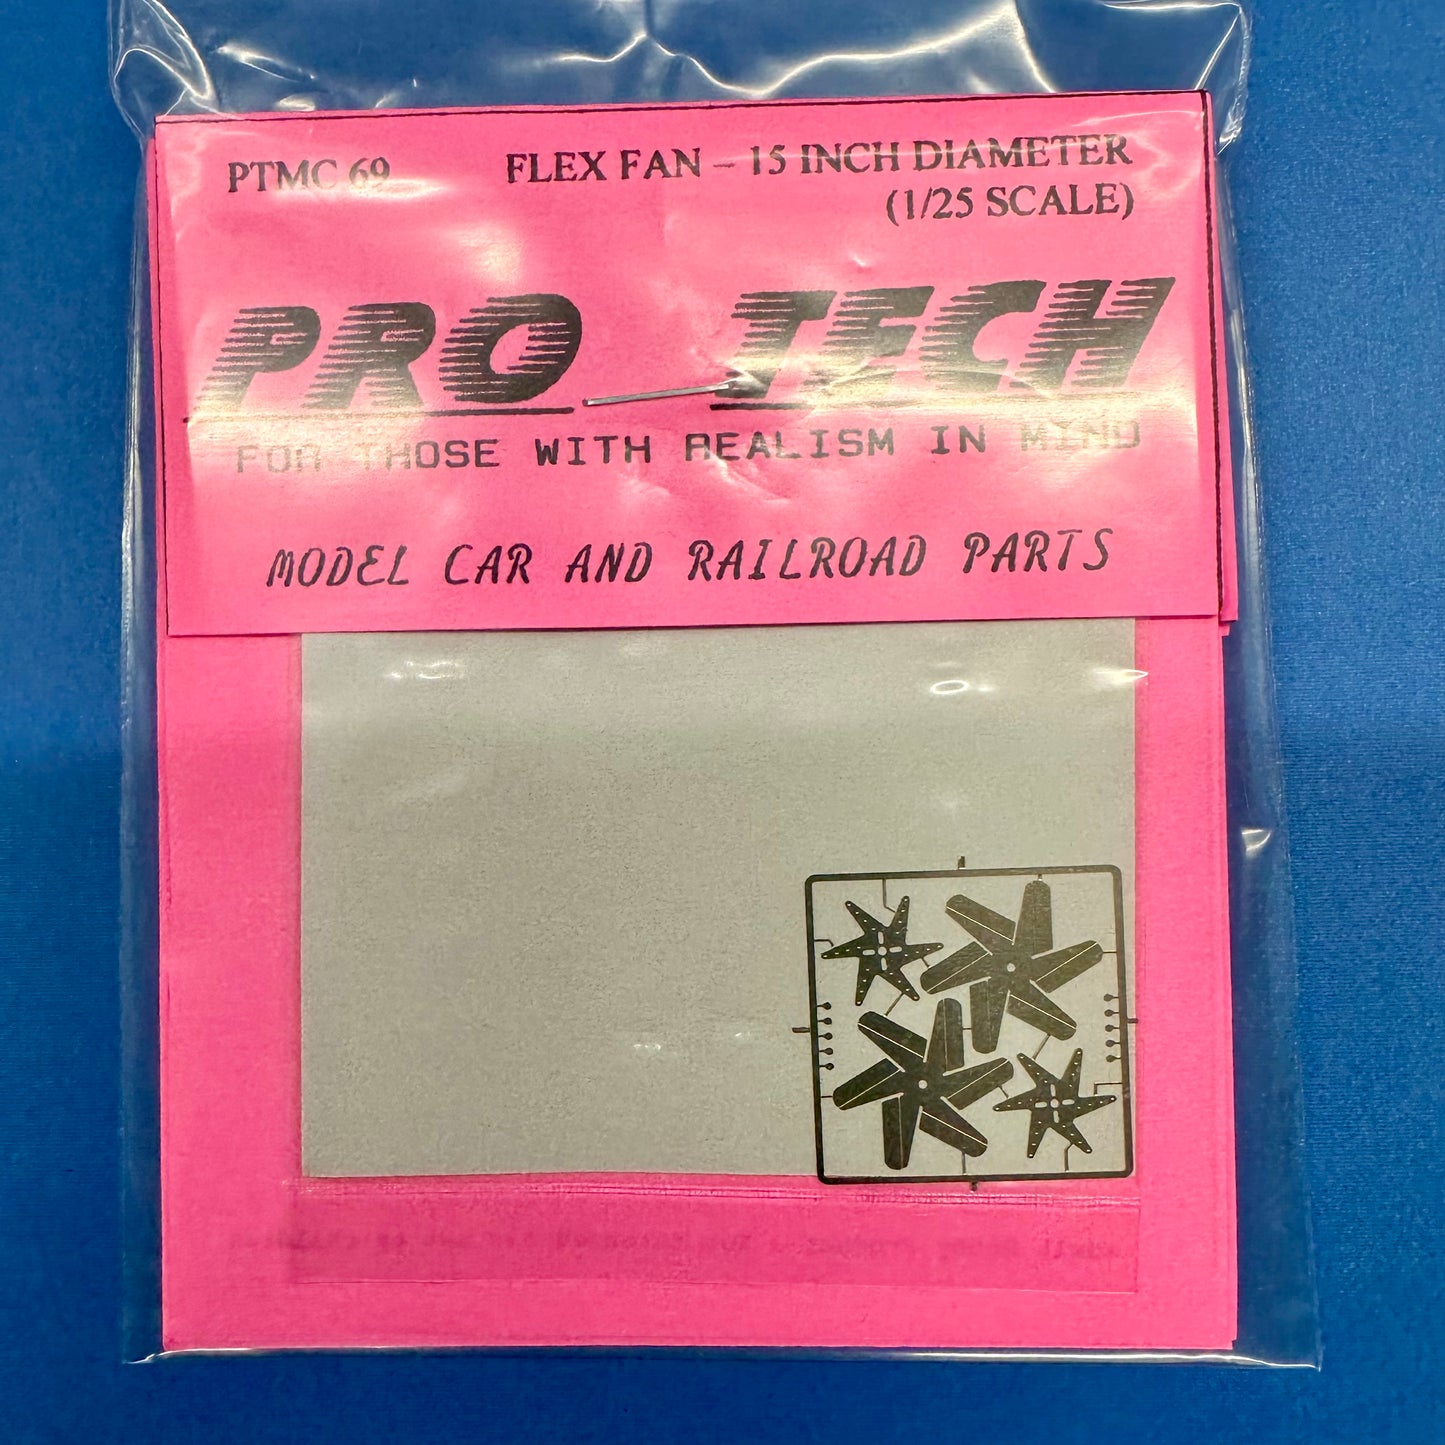 PTMC69 Flex Fan Kit 15 Inch Diameter 1/25 by Pro Tech